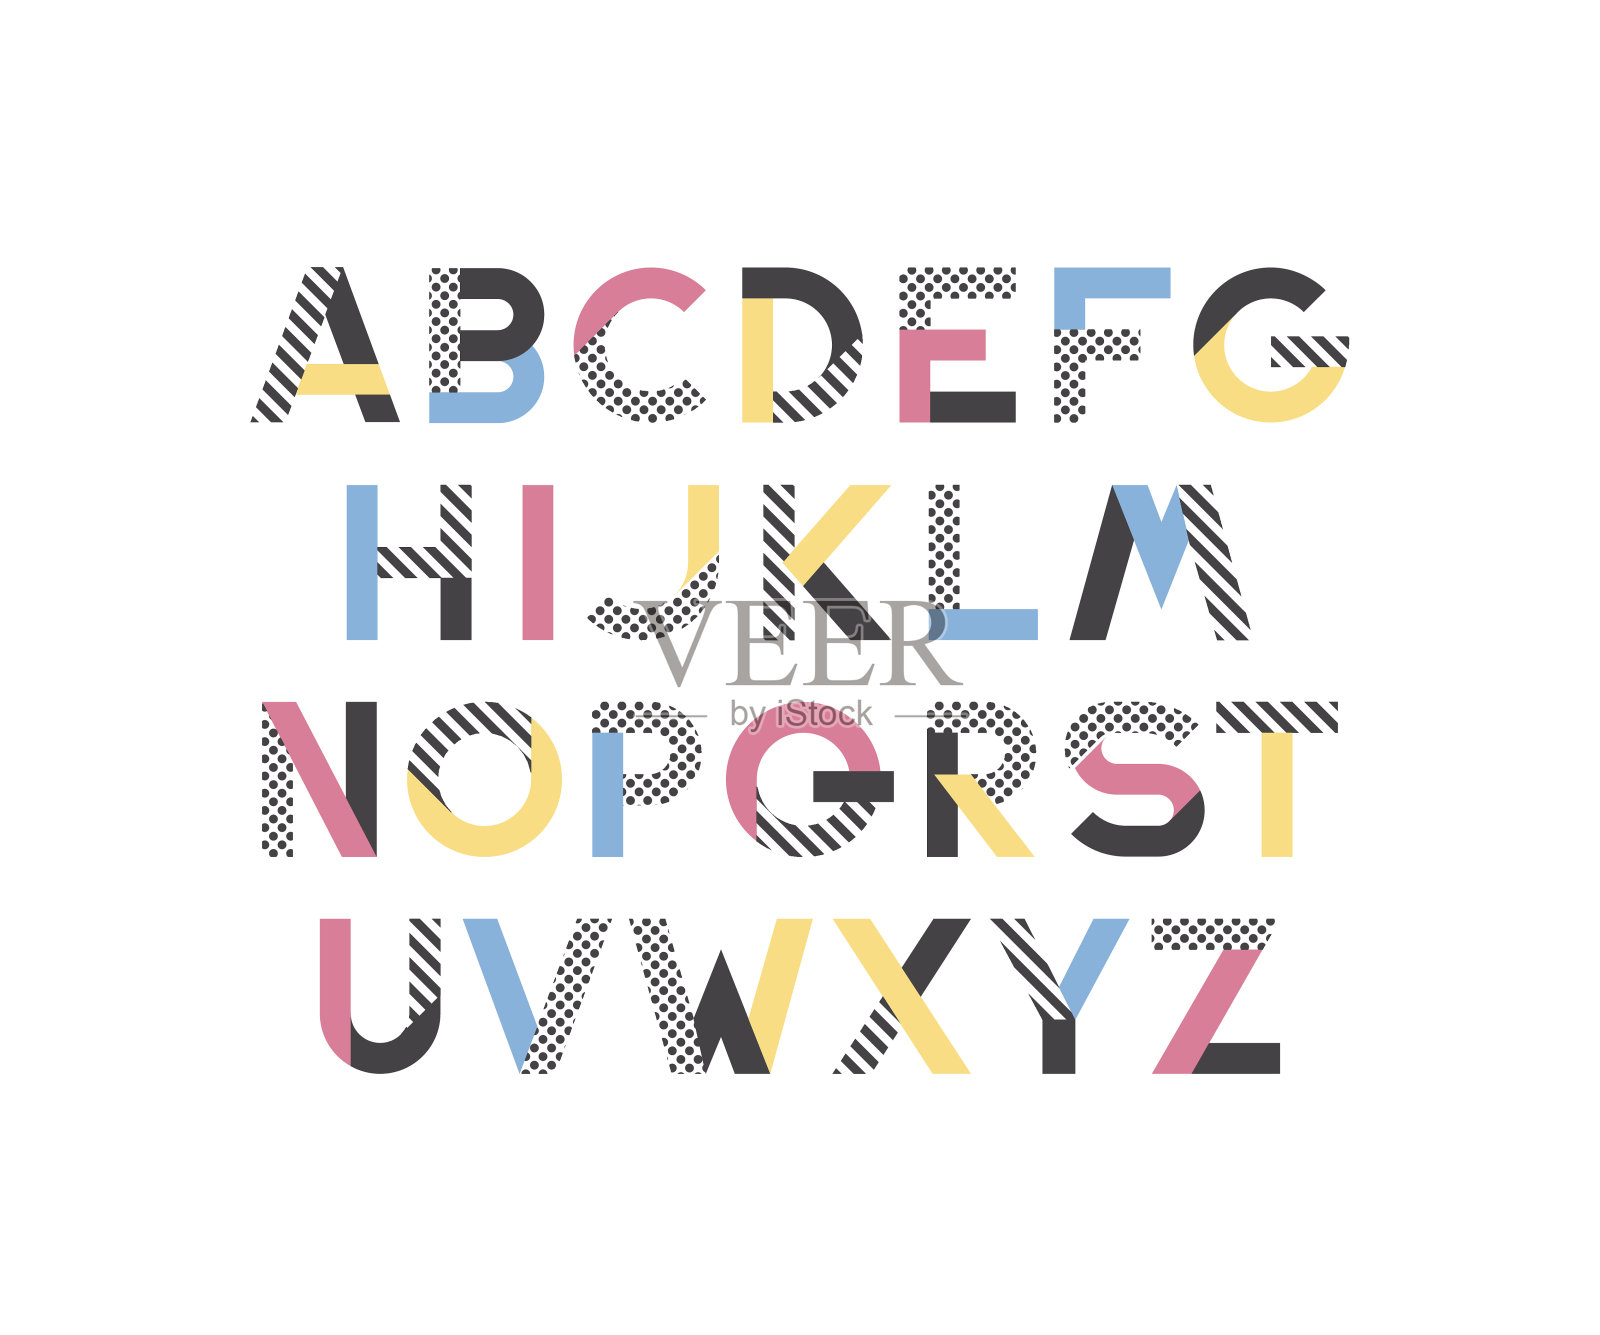 几何图案和色块的拉丁字体设计元素图片